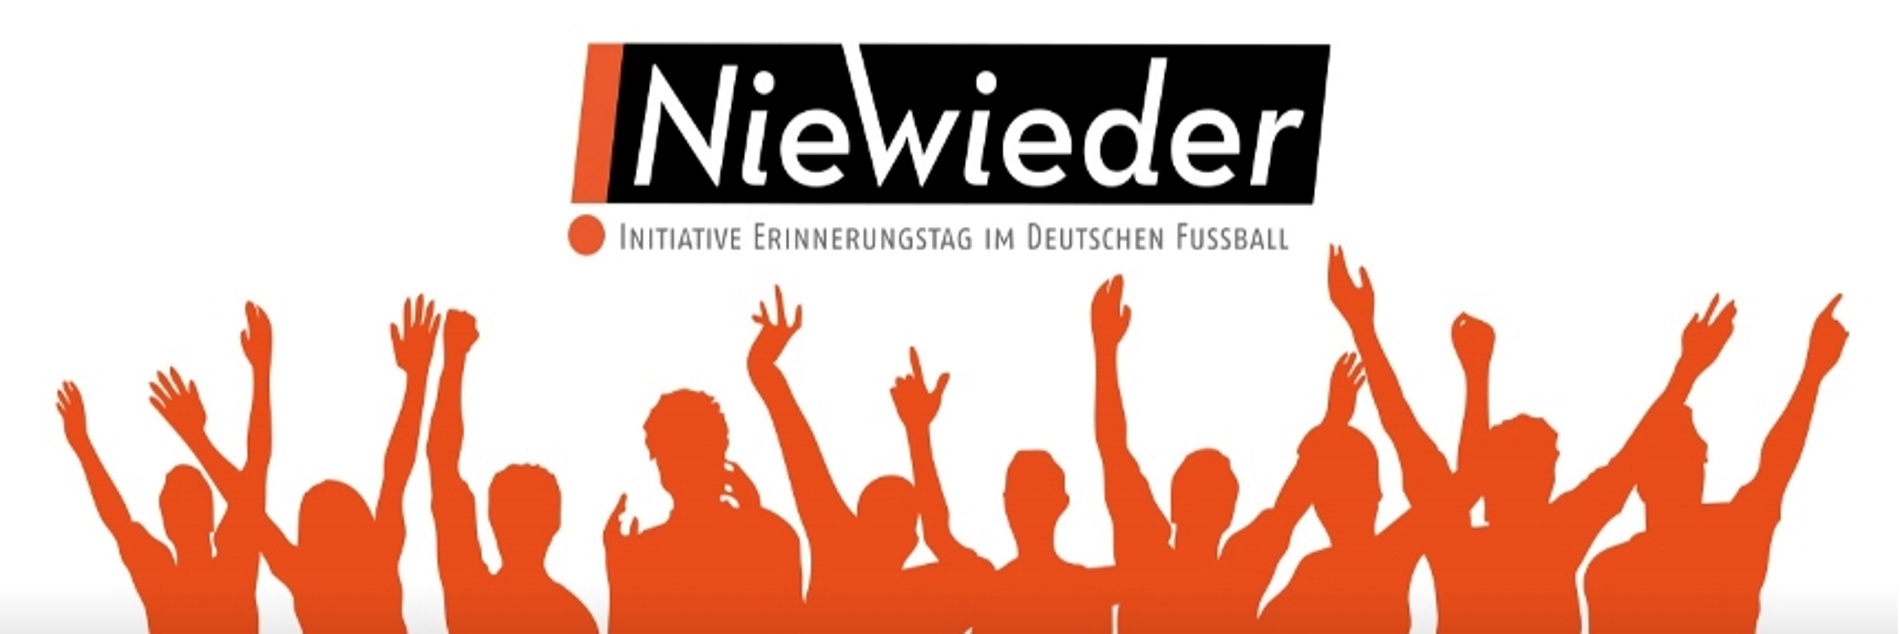 Fans mit nach oben gestreckten Armen, darüber das "NieWieder-Initiative Erinnerungstag im deutschen Fußball"-Logo